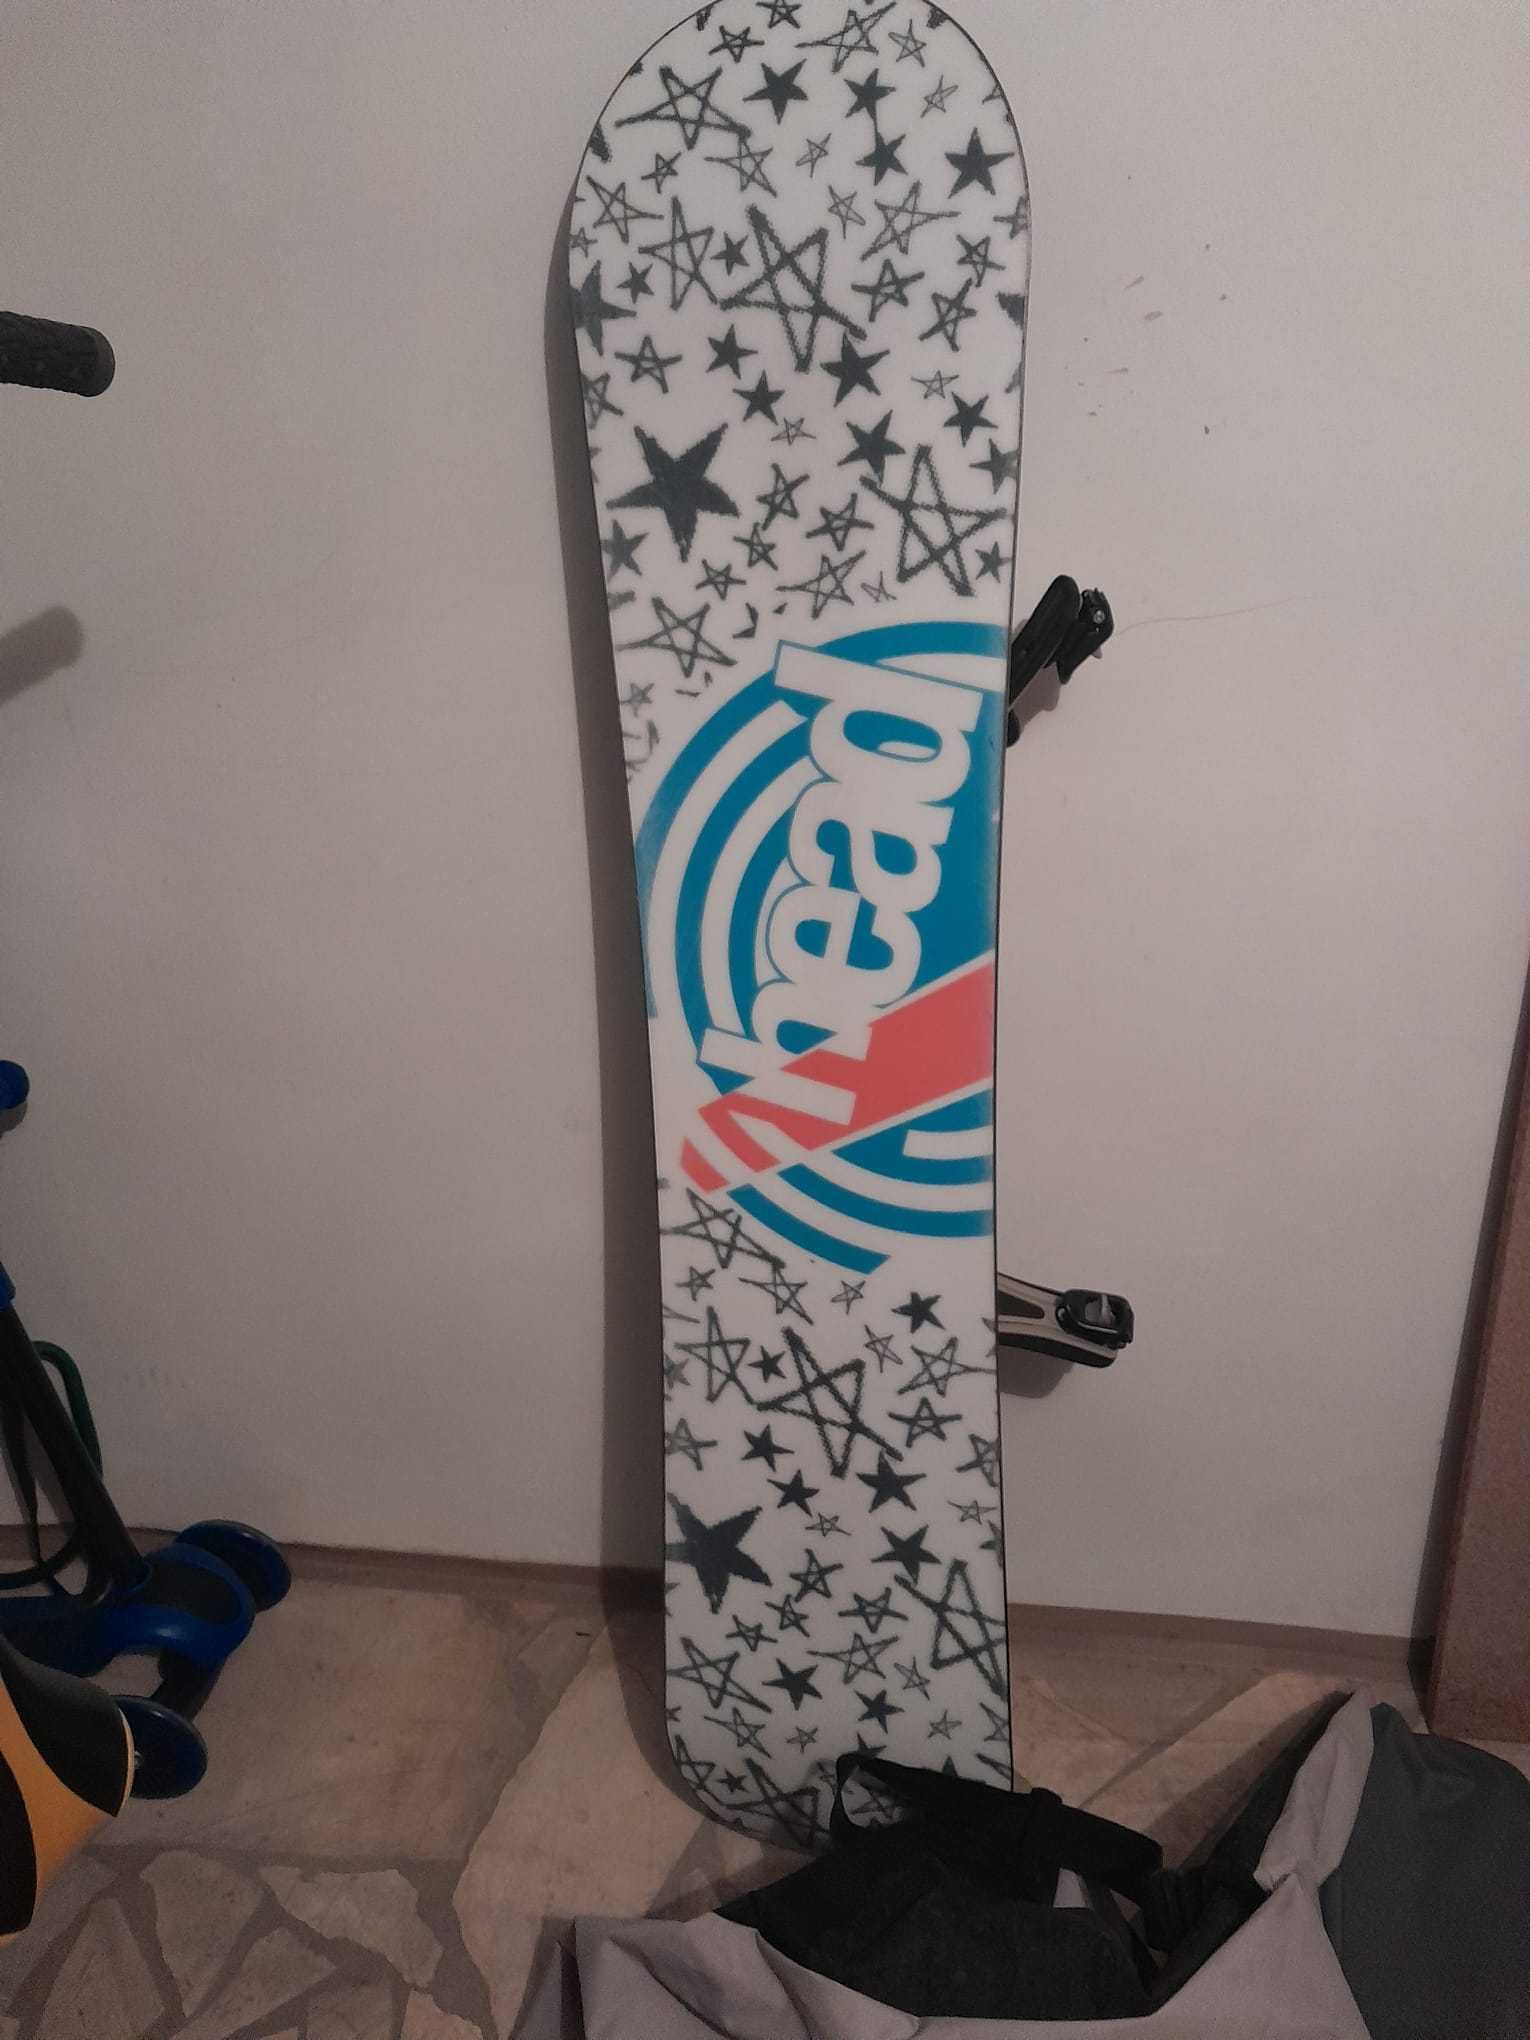 Deska snowboardowa Head Jr 136cm +wiązania+pokrowiec